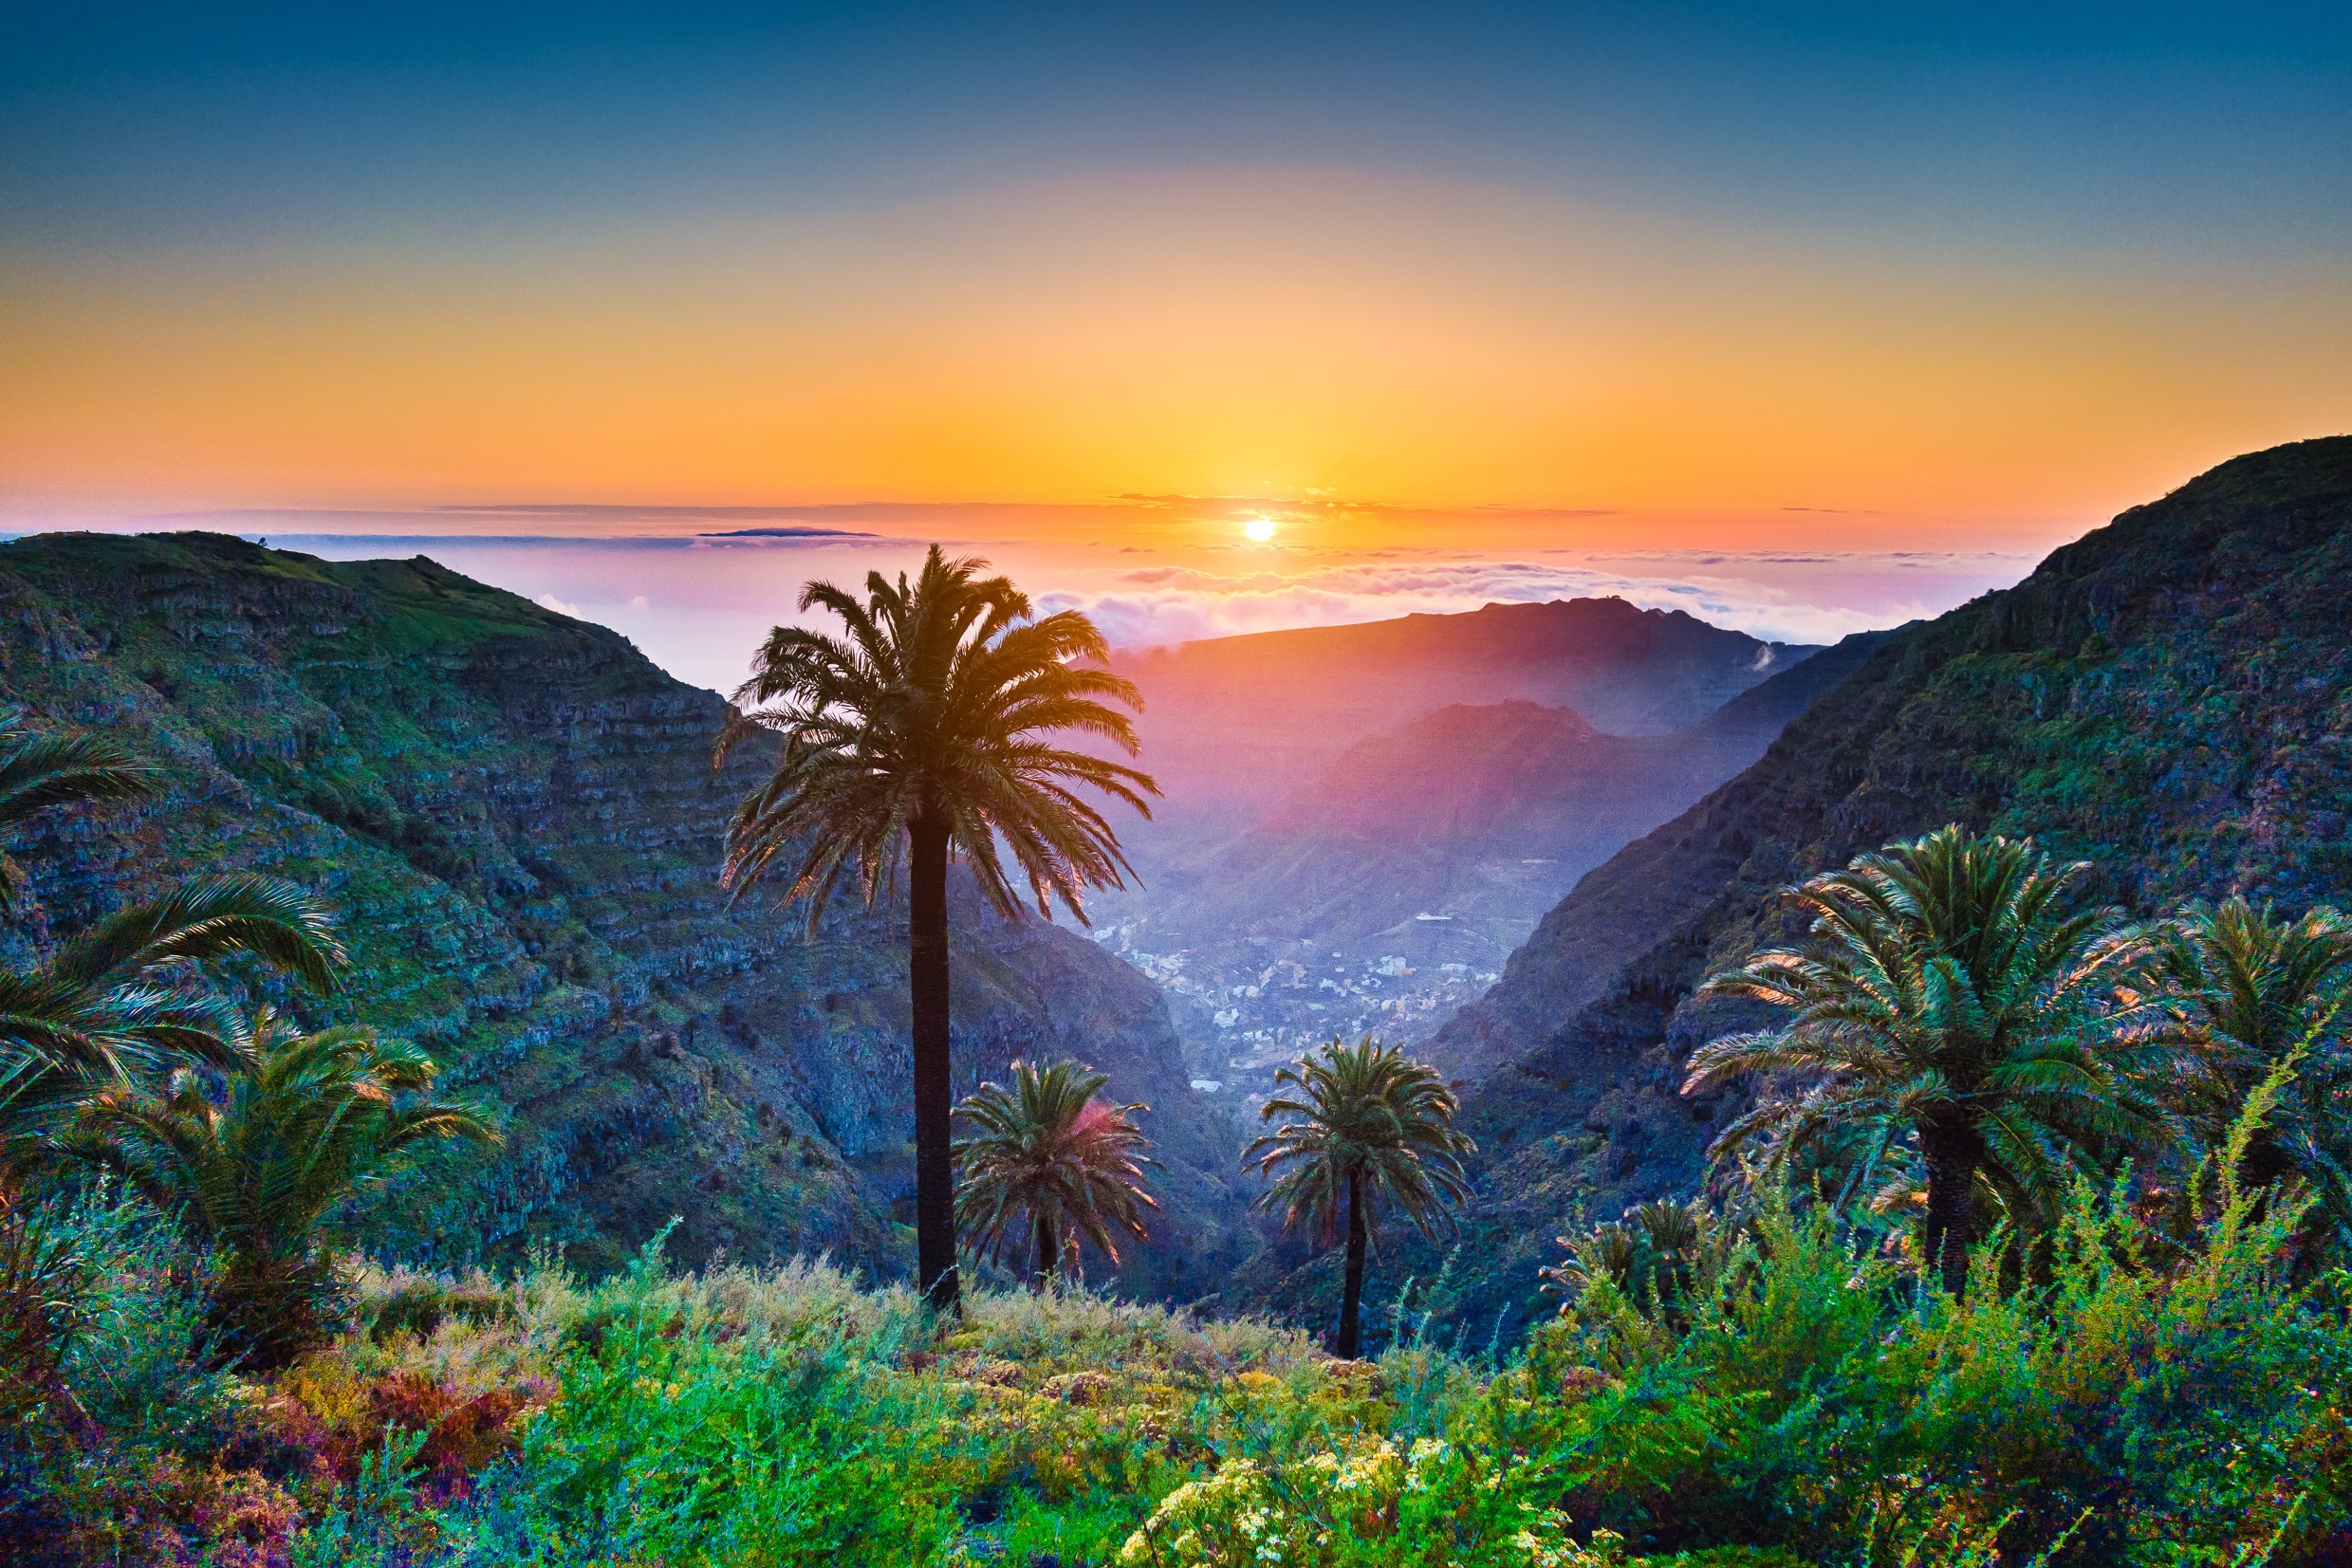 Piękny widok z niesamowitej tropikalnej scenerii z egzotycznymi palmami i górskimi dolinami nad szerokim otwartym morzem w złotym świetle wieczorem o zachodzie słońca z błękitnym niebem i chmurami w lecie, Wyspy Kanaryjskie, Hiszpania